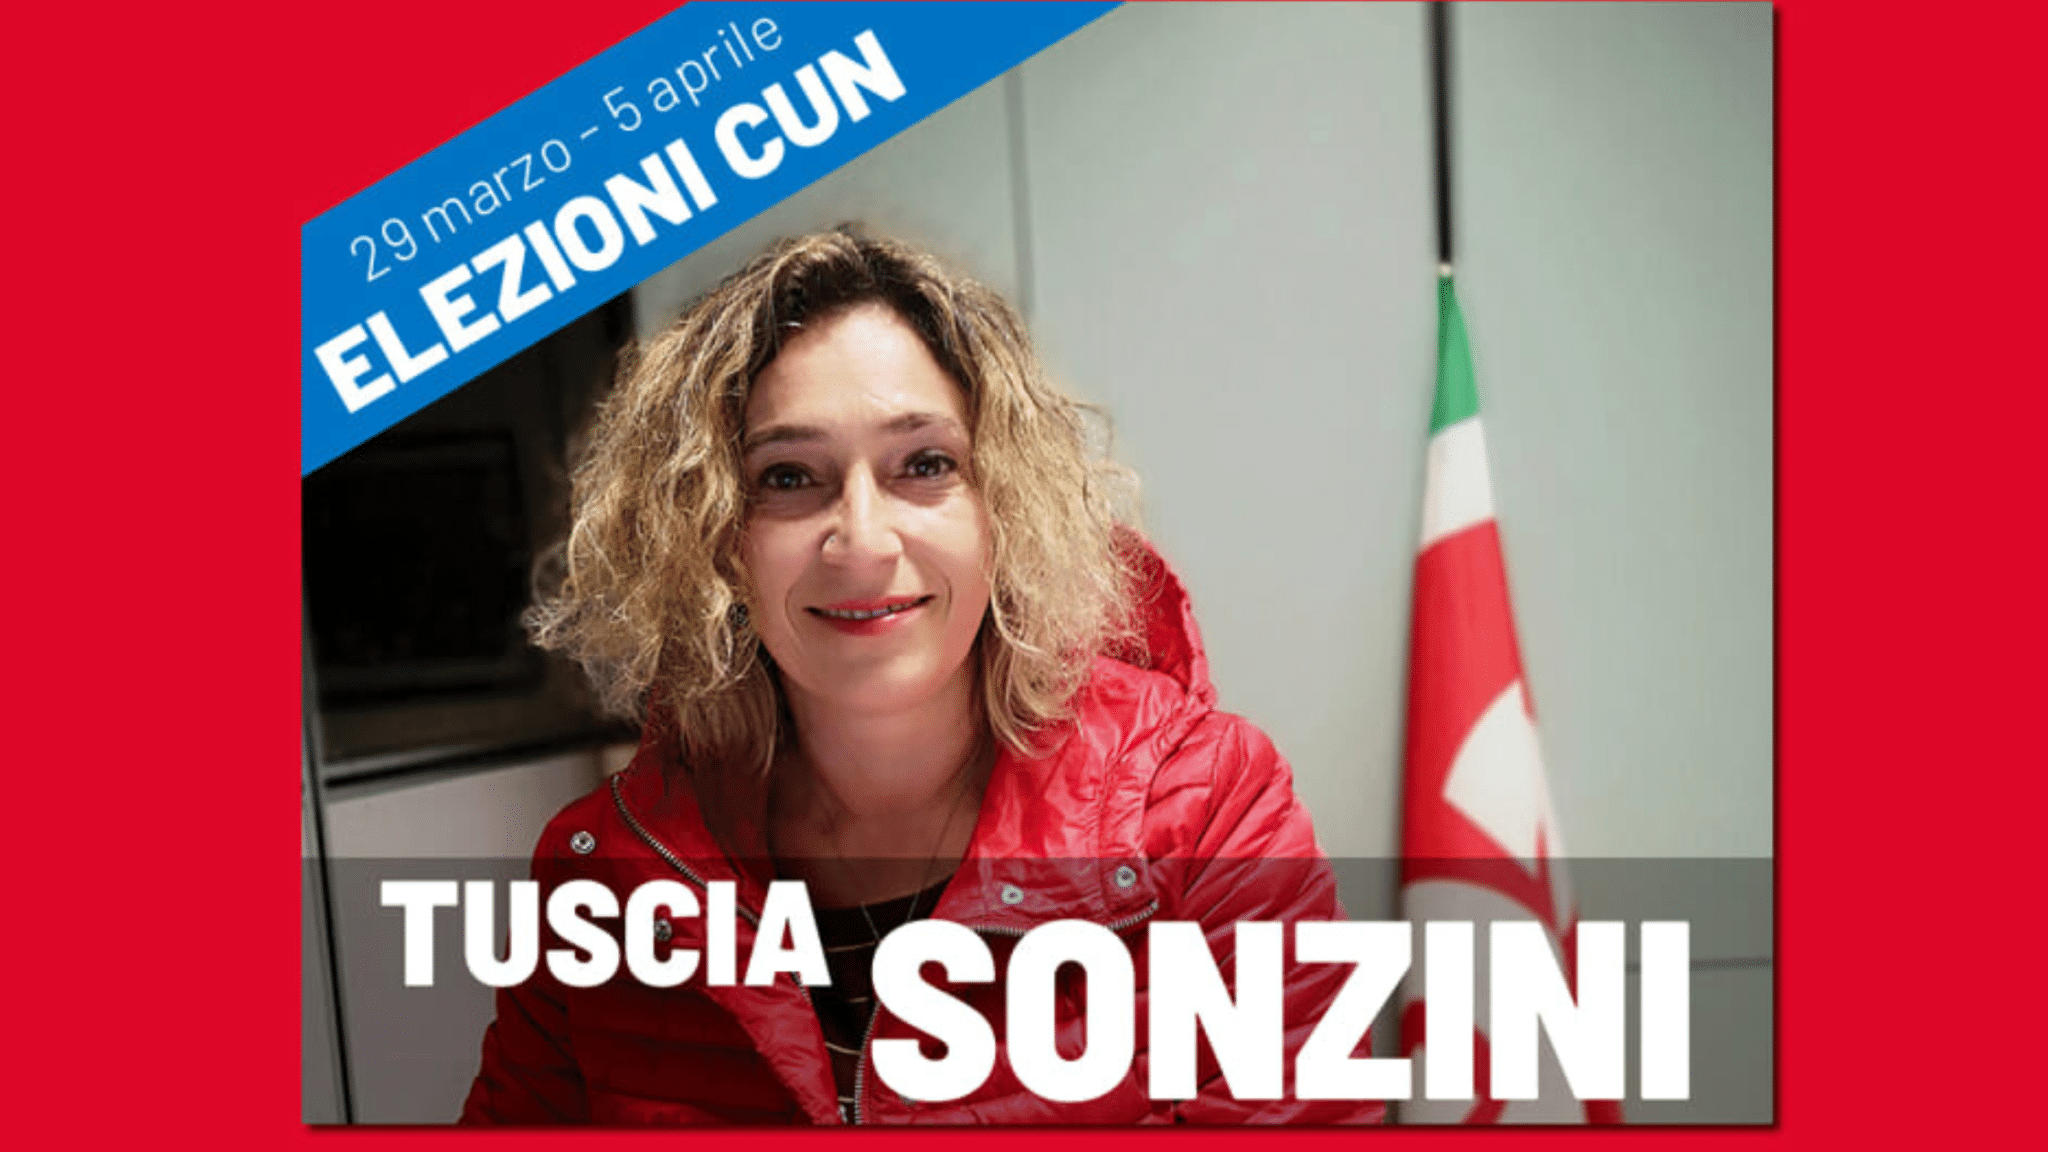 Rinnovo parziale CUN: assemblea sindacale di presentazione della candidata Tuscia Sonzini